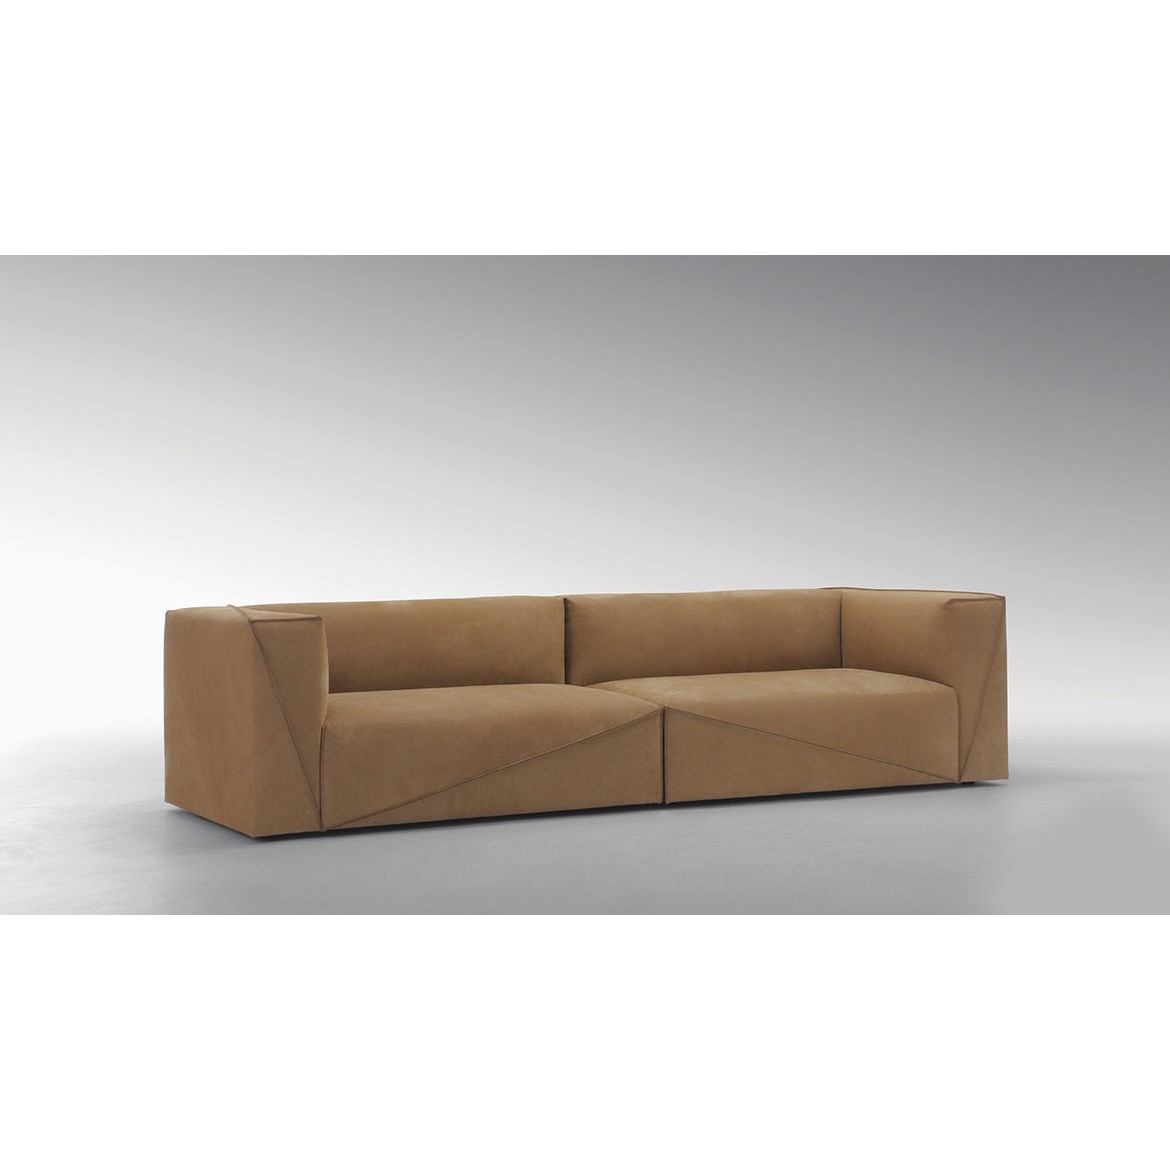 Мебель на заказ / Диван, стиль хай-тек, дизайн  Fendi Casa, модель Diagonal Sofa